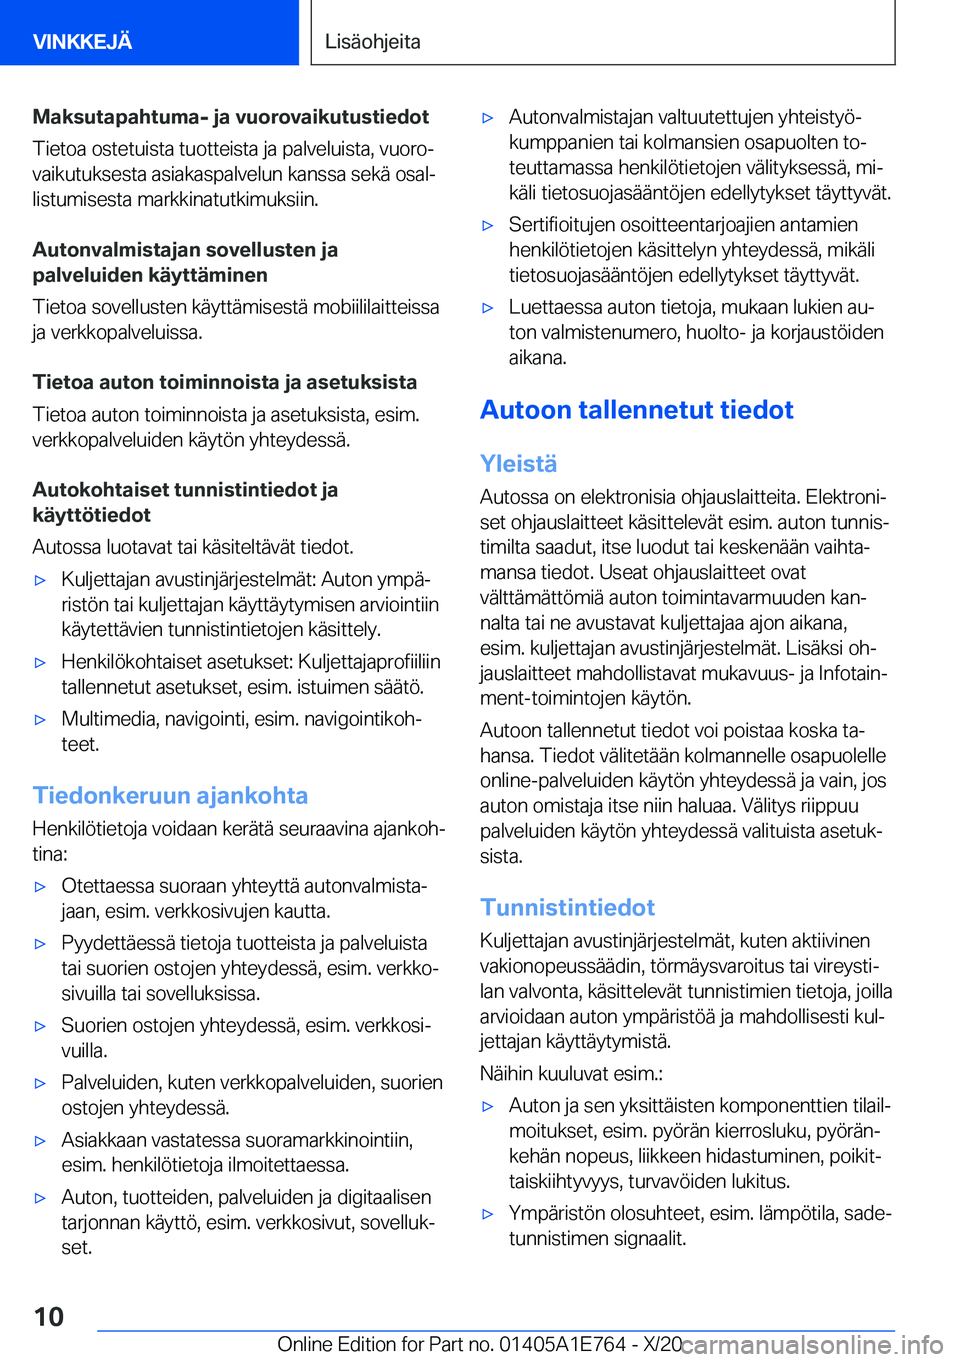 BMW X2 2021  Omistajan Käsikirja (in Finnish) �M�a�k�s�u�t�a�p�a�h�t�u�m�a�-��j�a��v�u�o�r�o�v�a�i�k�u�t�u�s�t�i�e�d�o�t�T�i�e�t�o�a��o�s�t�e�t�u�i�s�t�a��t�u�o�t�t�e�i�s�t�a��j�a��p�a�l�v�e�l�u�i�s�t�a�,��v�u�o�r�oj�v�a�i�k�u�t�u�k�s�e�s